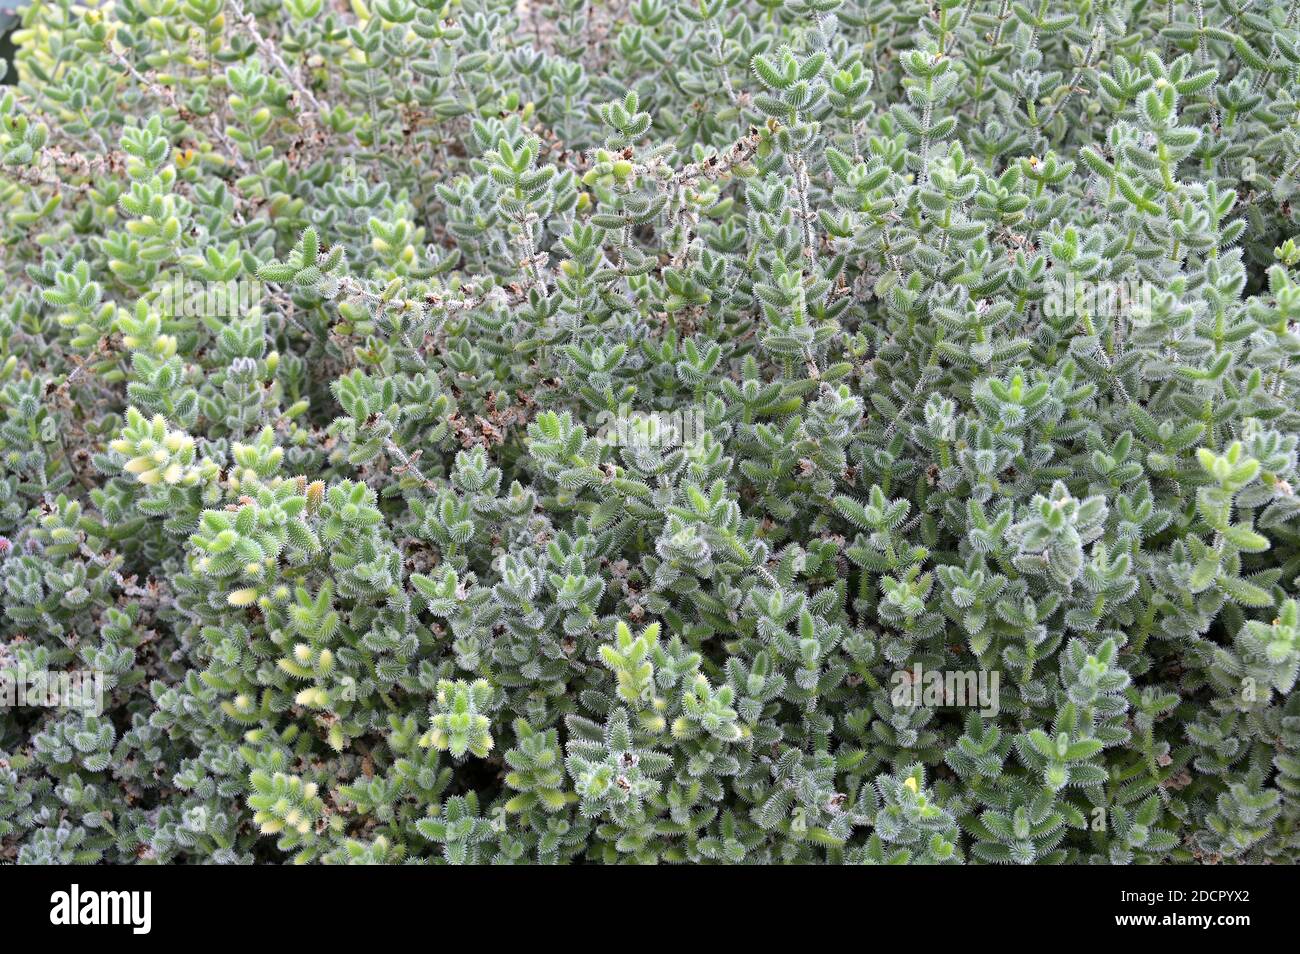 Eine Gruppe von Delosperma echinatum, allgemein bekannt als Pickle Plant. Die Sukkulente stammt aus Südafrika und kann bis zu 45cm hoch werden. Stockfoto